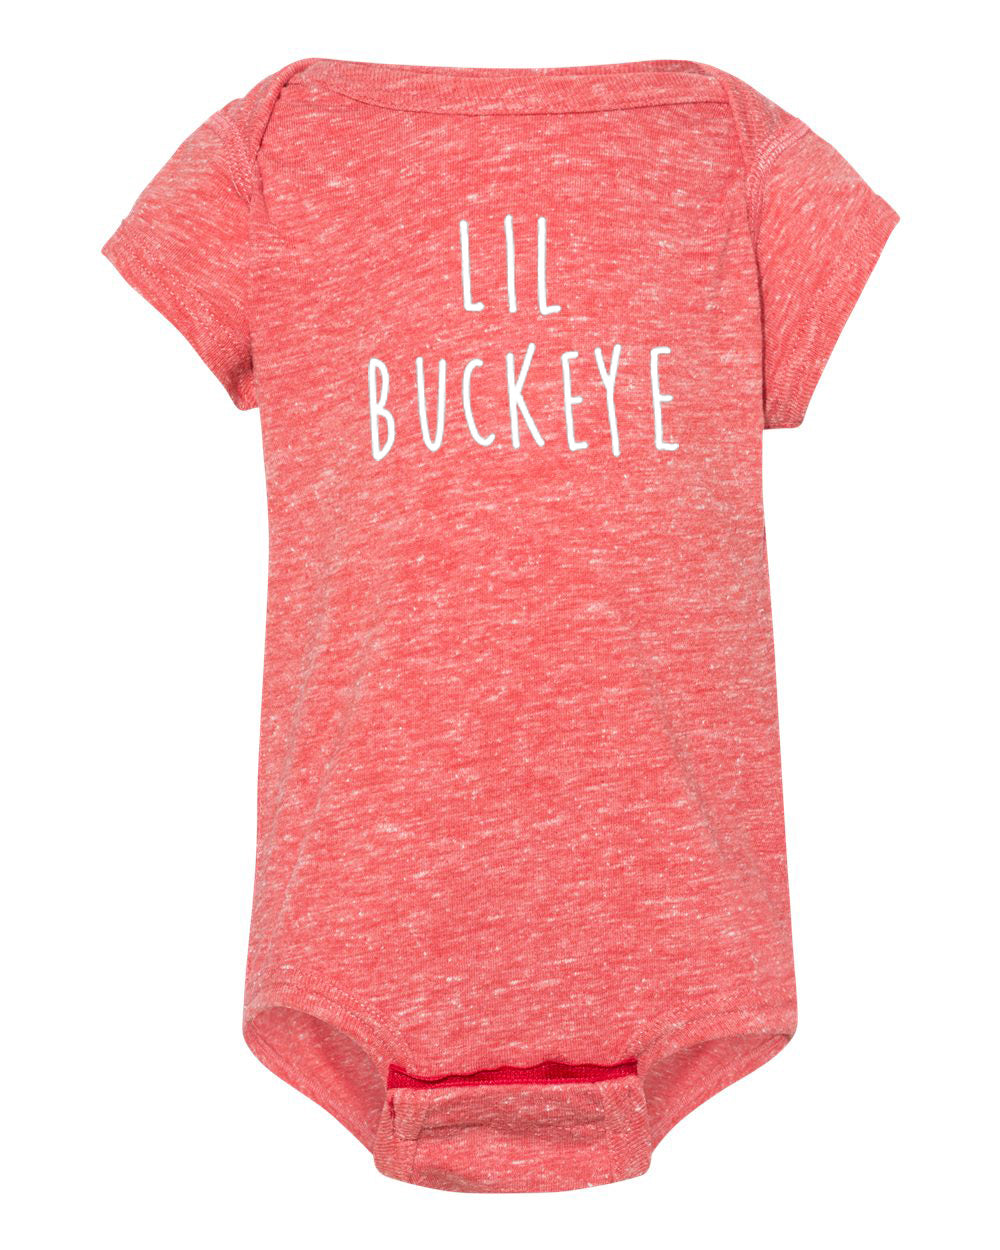 Lil Buckeye : Baby Bodysuit